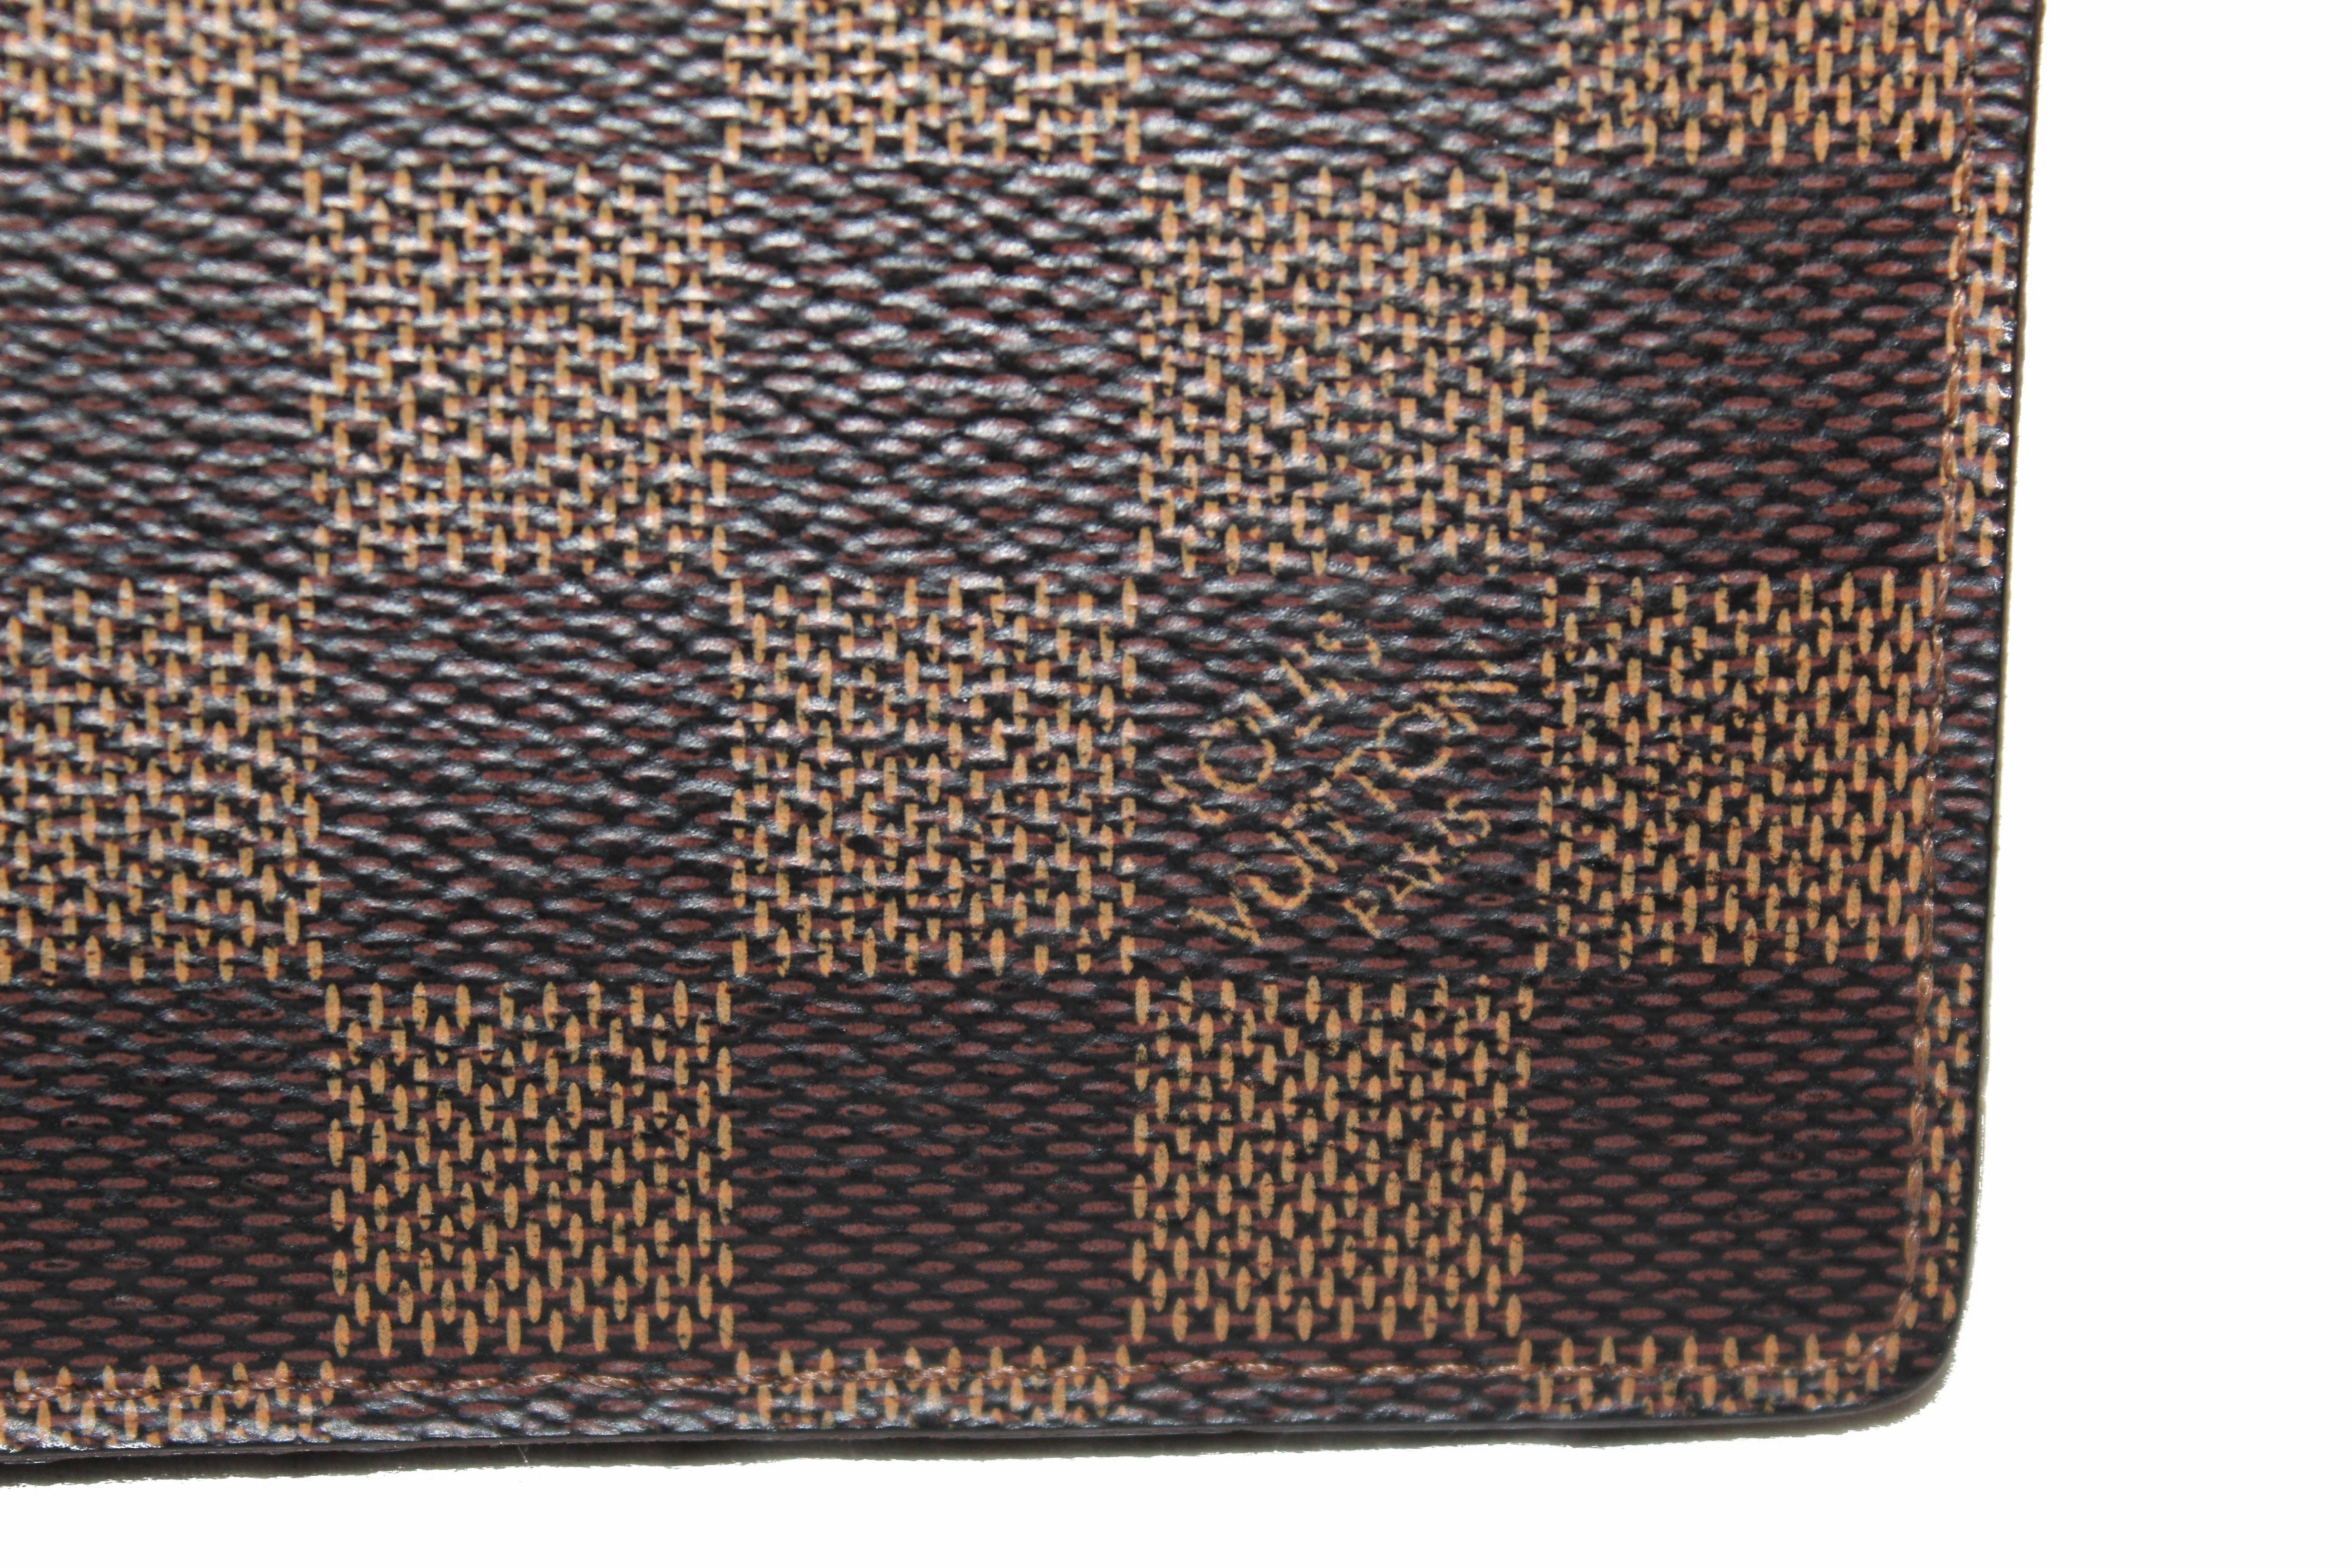 Louis Vuitton Damier Graphite Pattern Coated Canvas Multiple Wallet